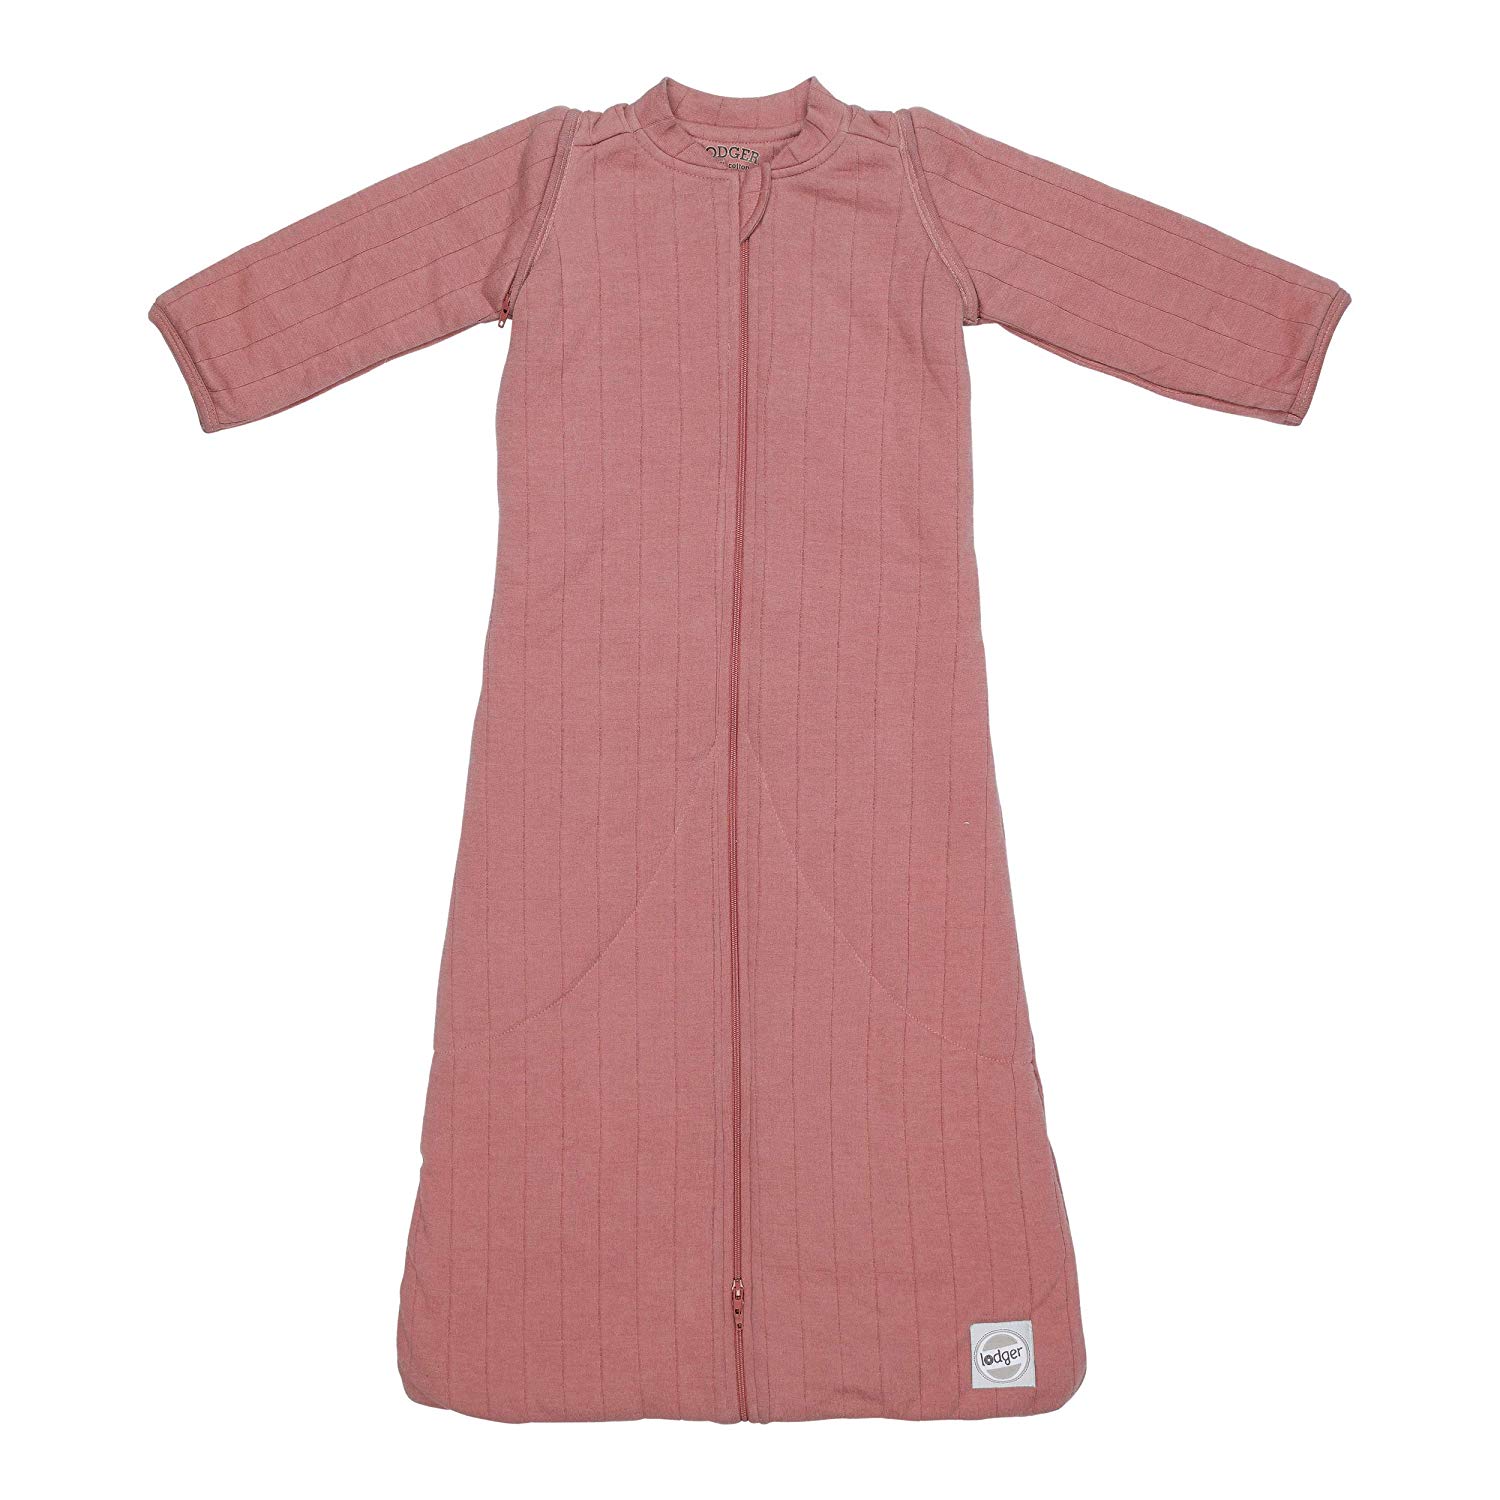 Lodger Hopper Baby Sleeping Bag with Sleeves - Dark Pink 86/98